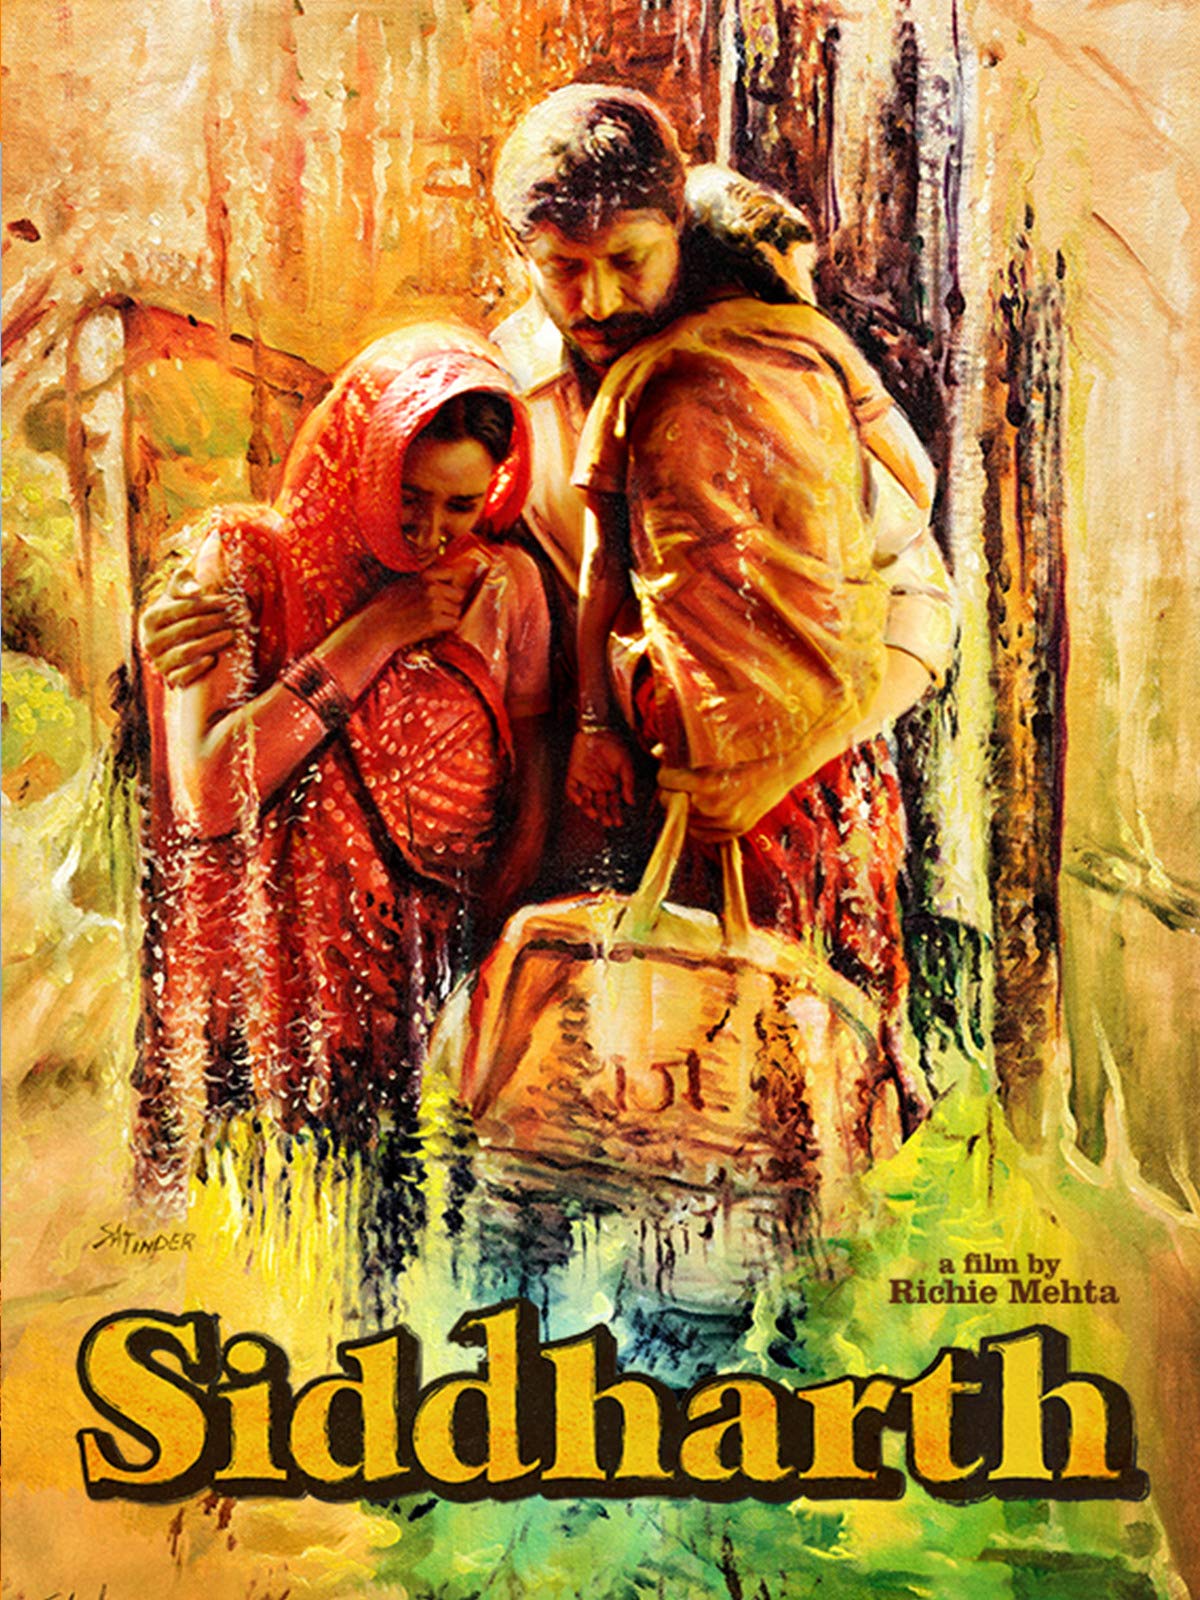 Siddharth (2013 film)